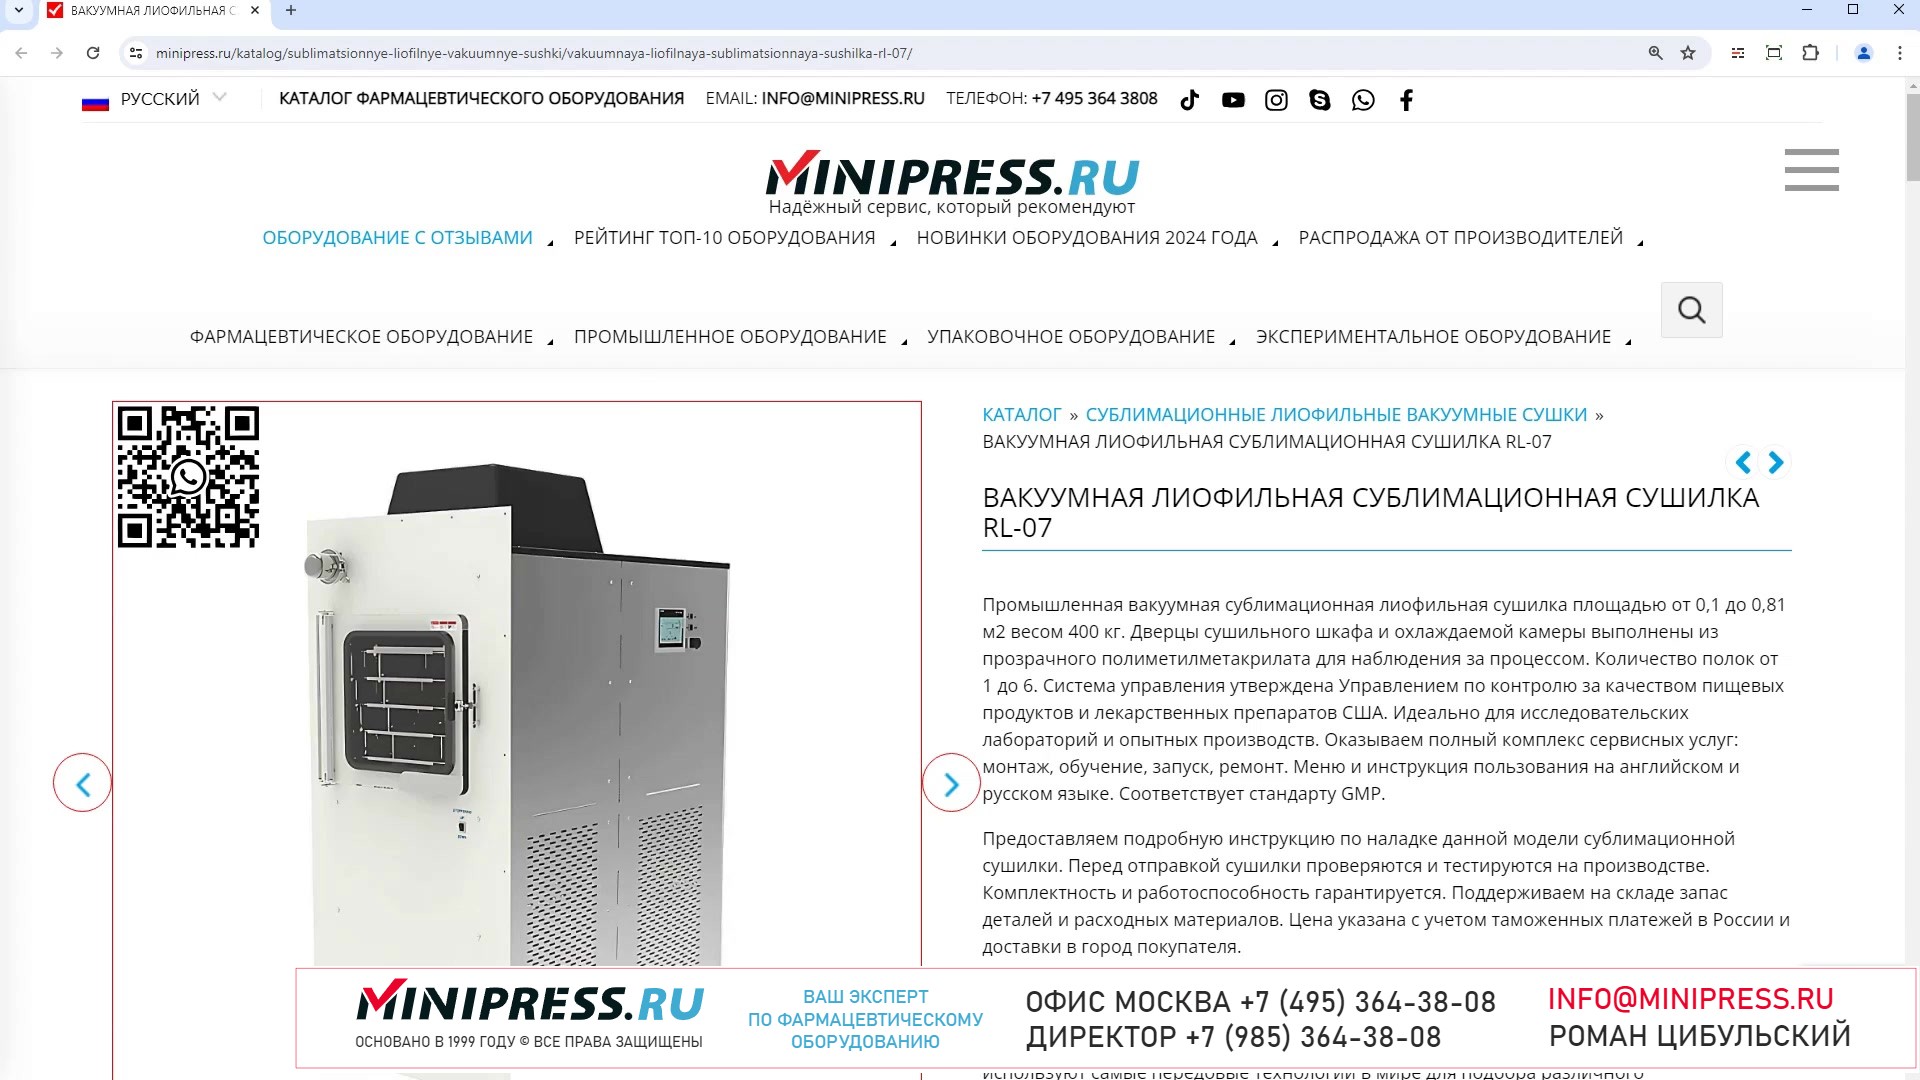 Minipress.ru Вакуумная лиофильная сублимационная сушилка RL-07